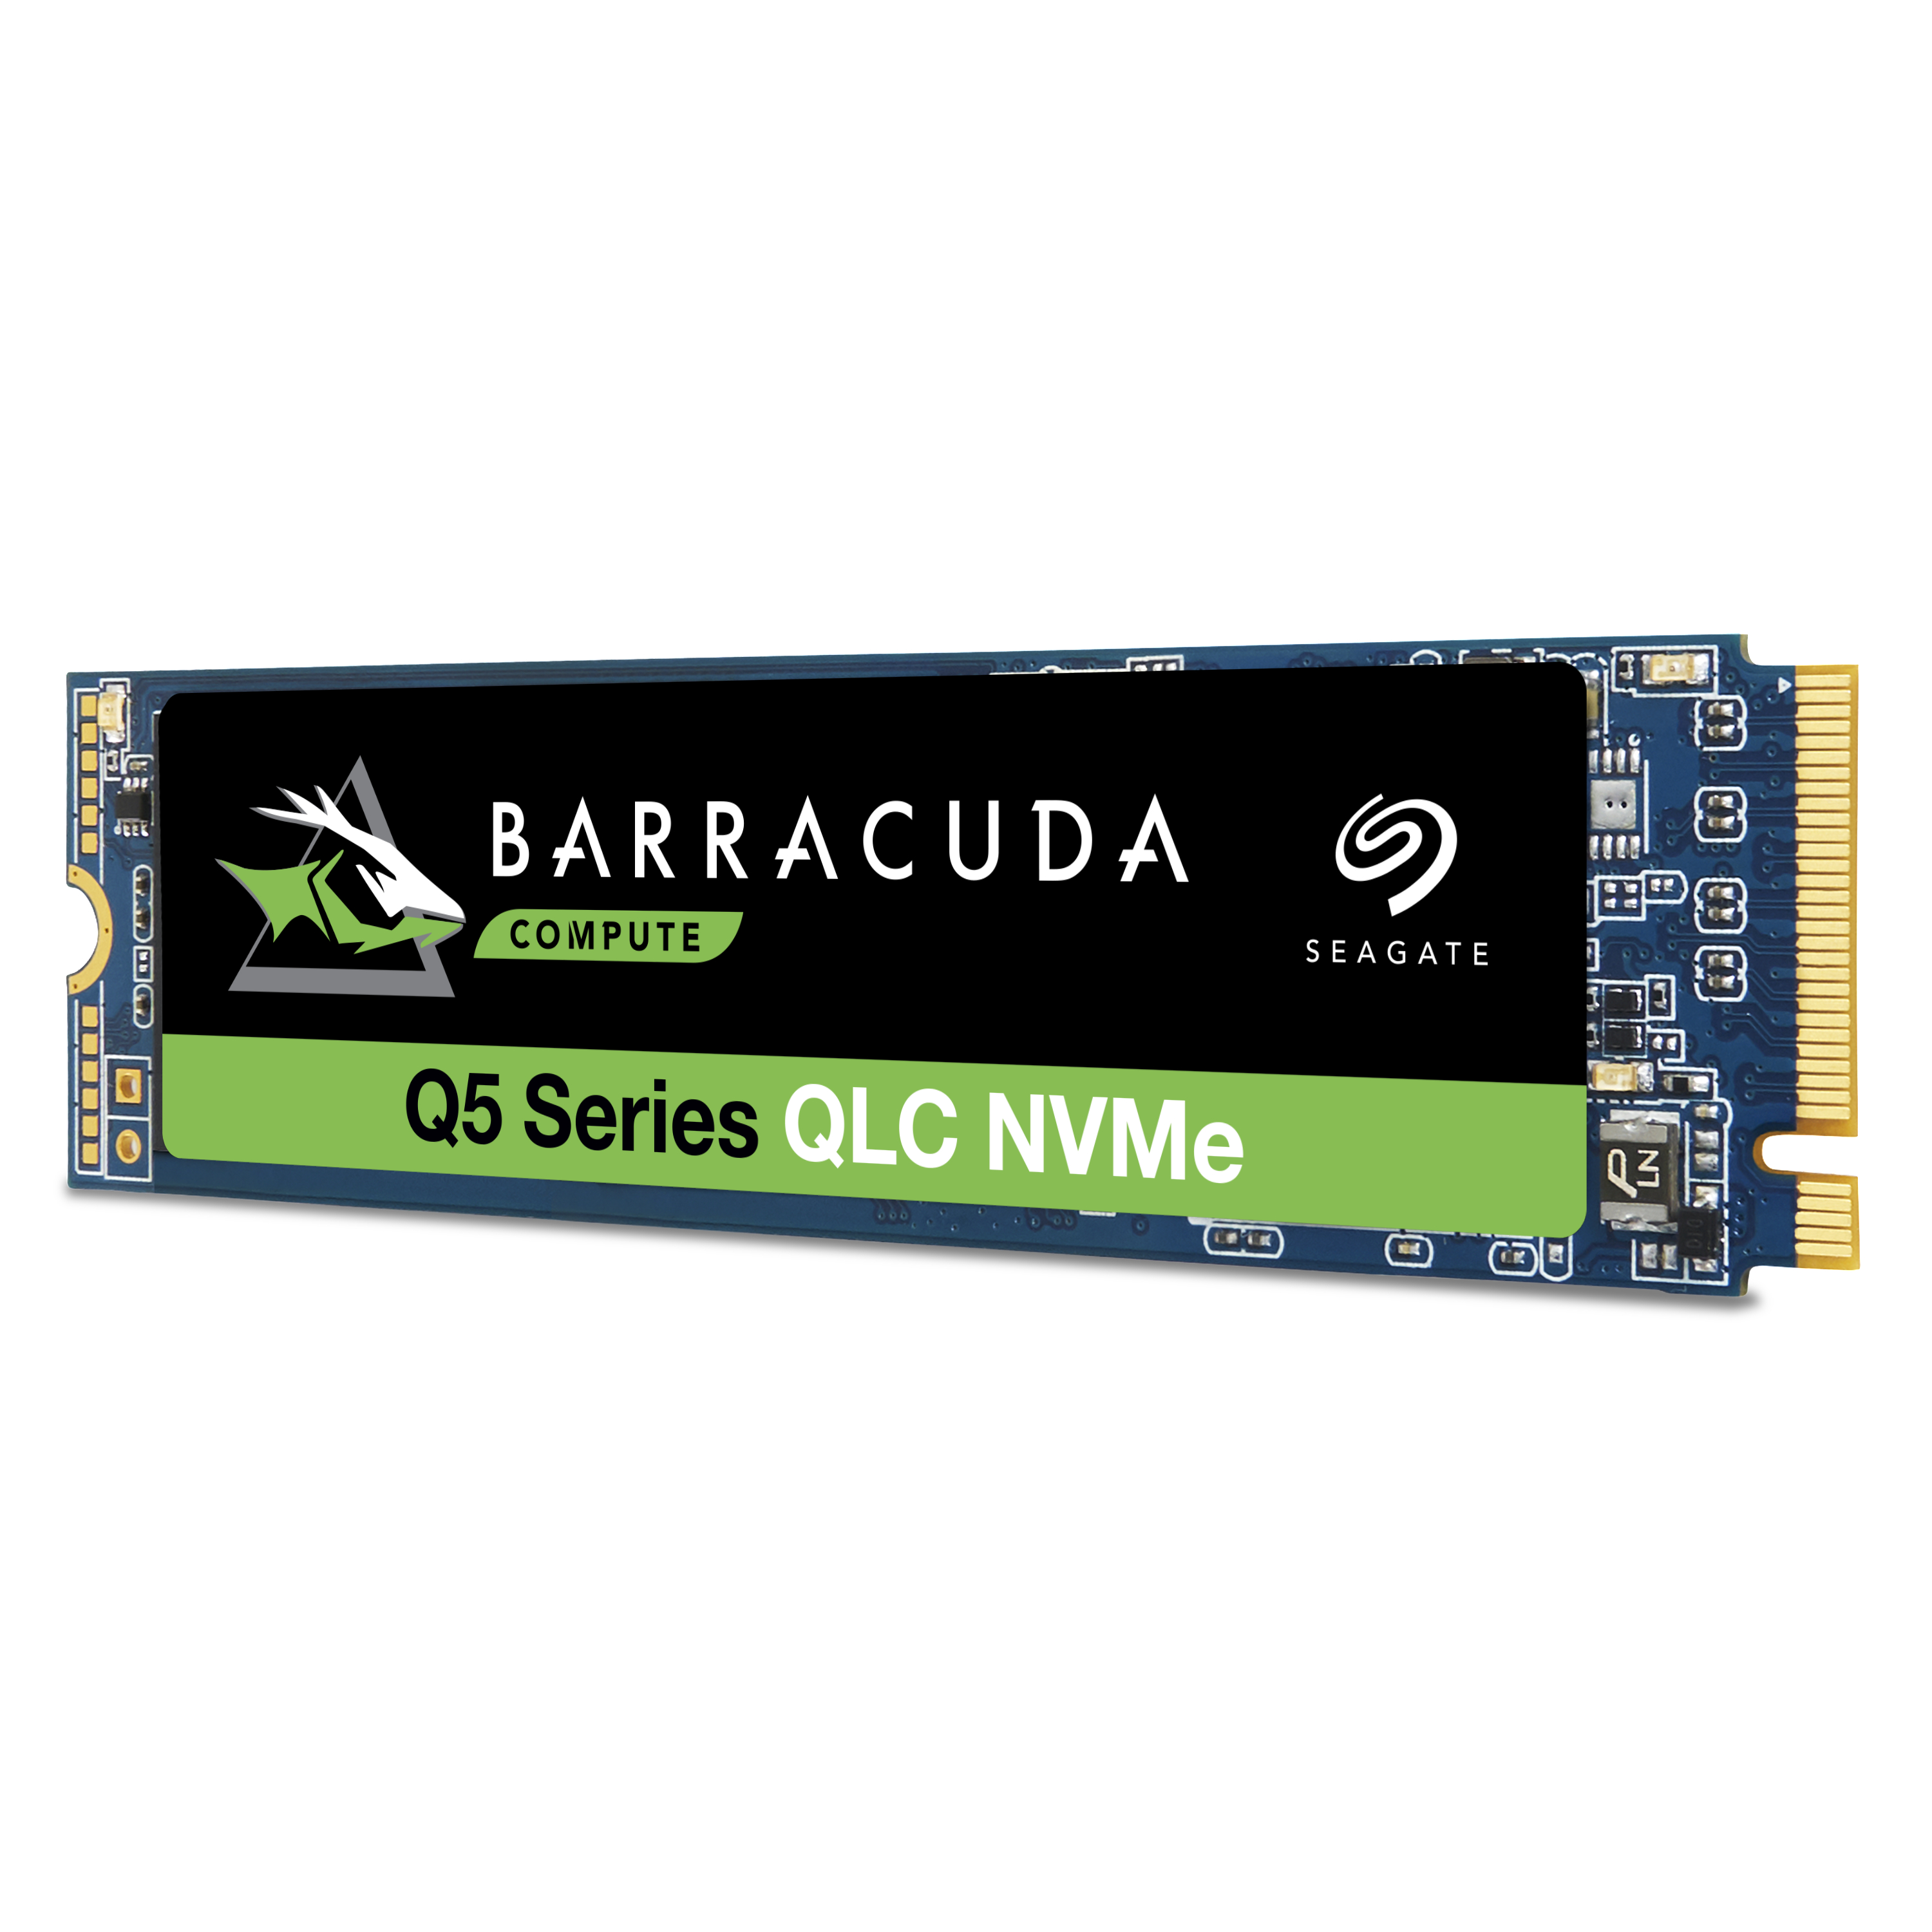 SEAGATE TB 1 BarraCuda Festplatte Q5 Express, intern SSD Bulk, PCI